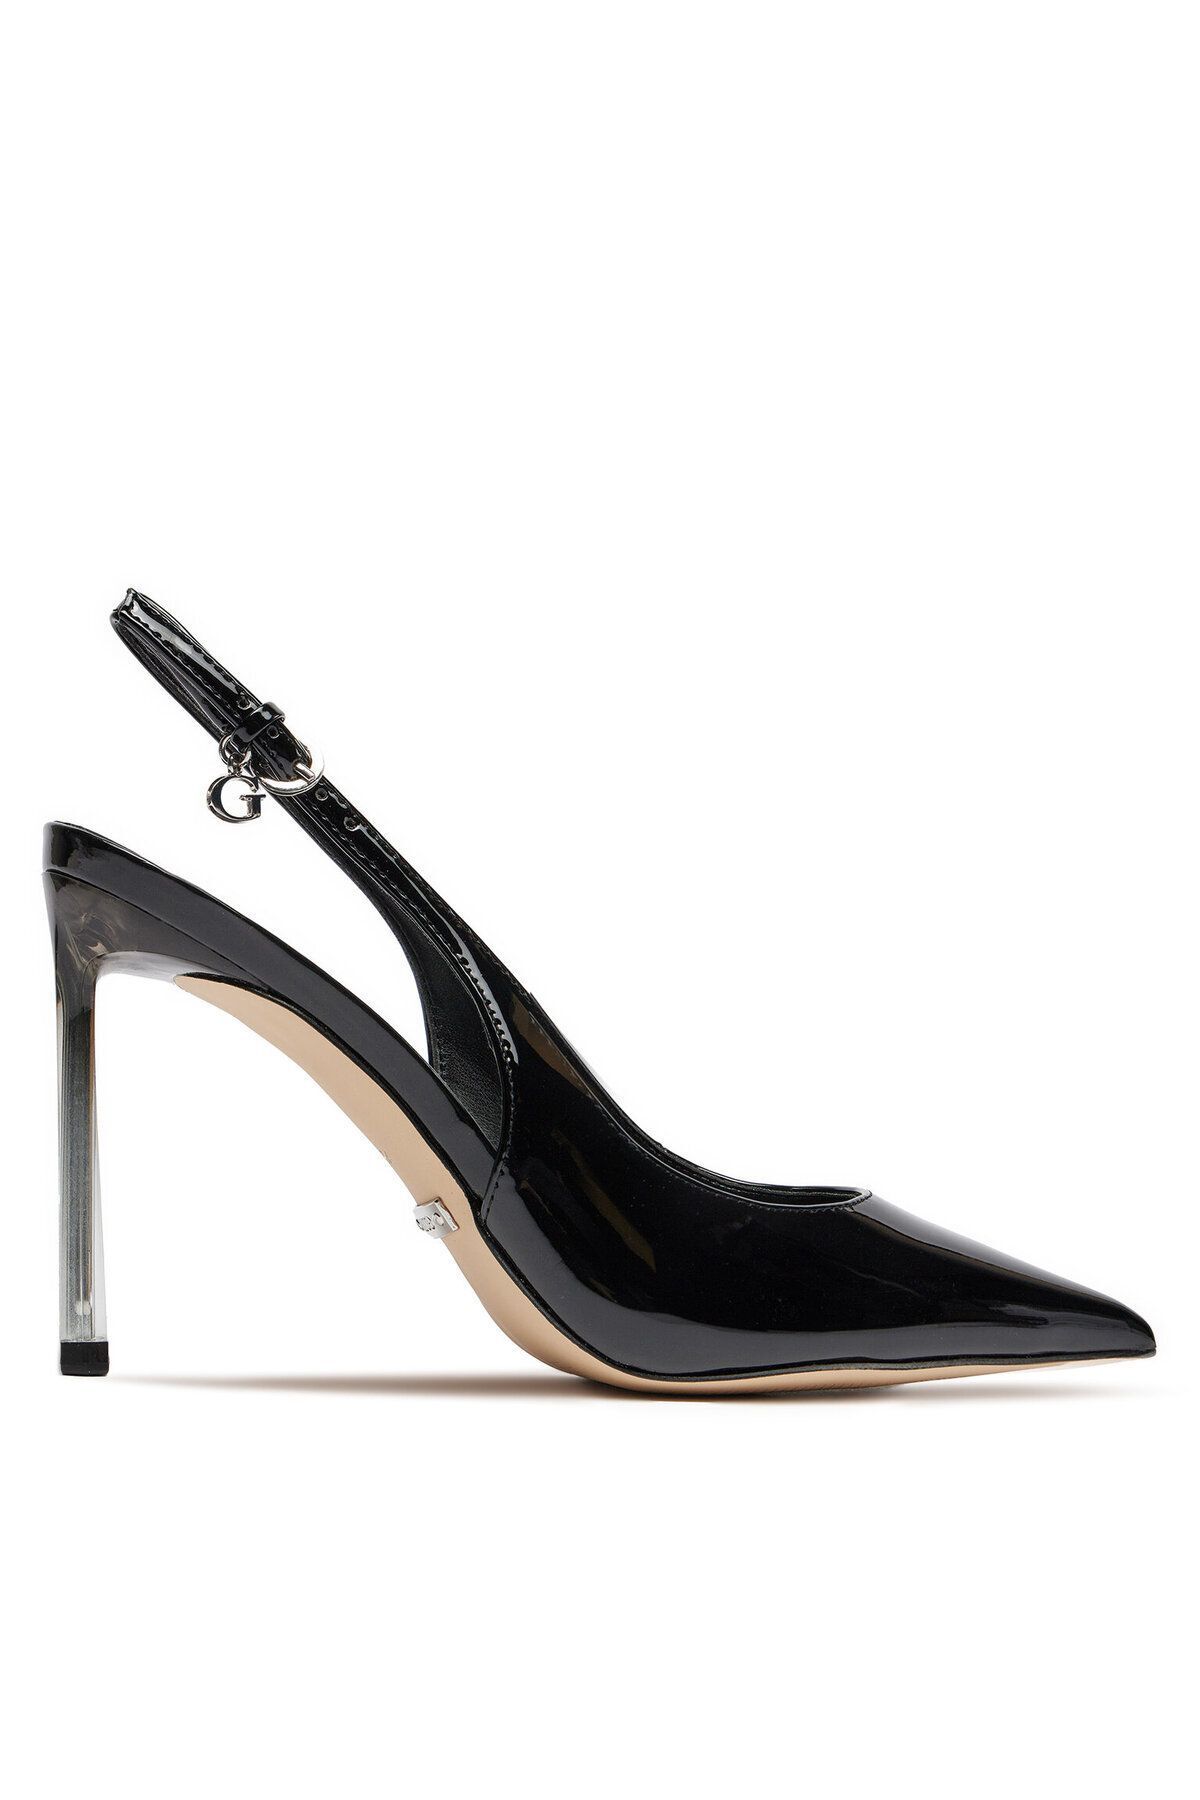 Guess Kadın Yüksek Topuklu Sivri Burun Günlük Siyah Klasik Topuklu Ayakkabı FLJSYD PAT05-BLACK